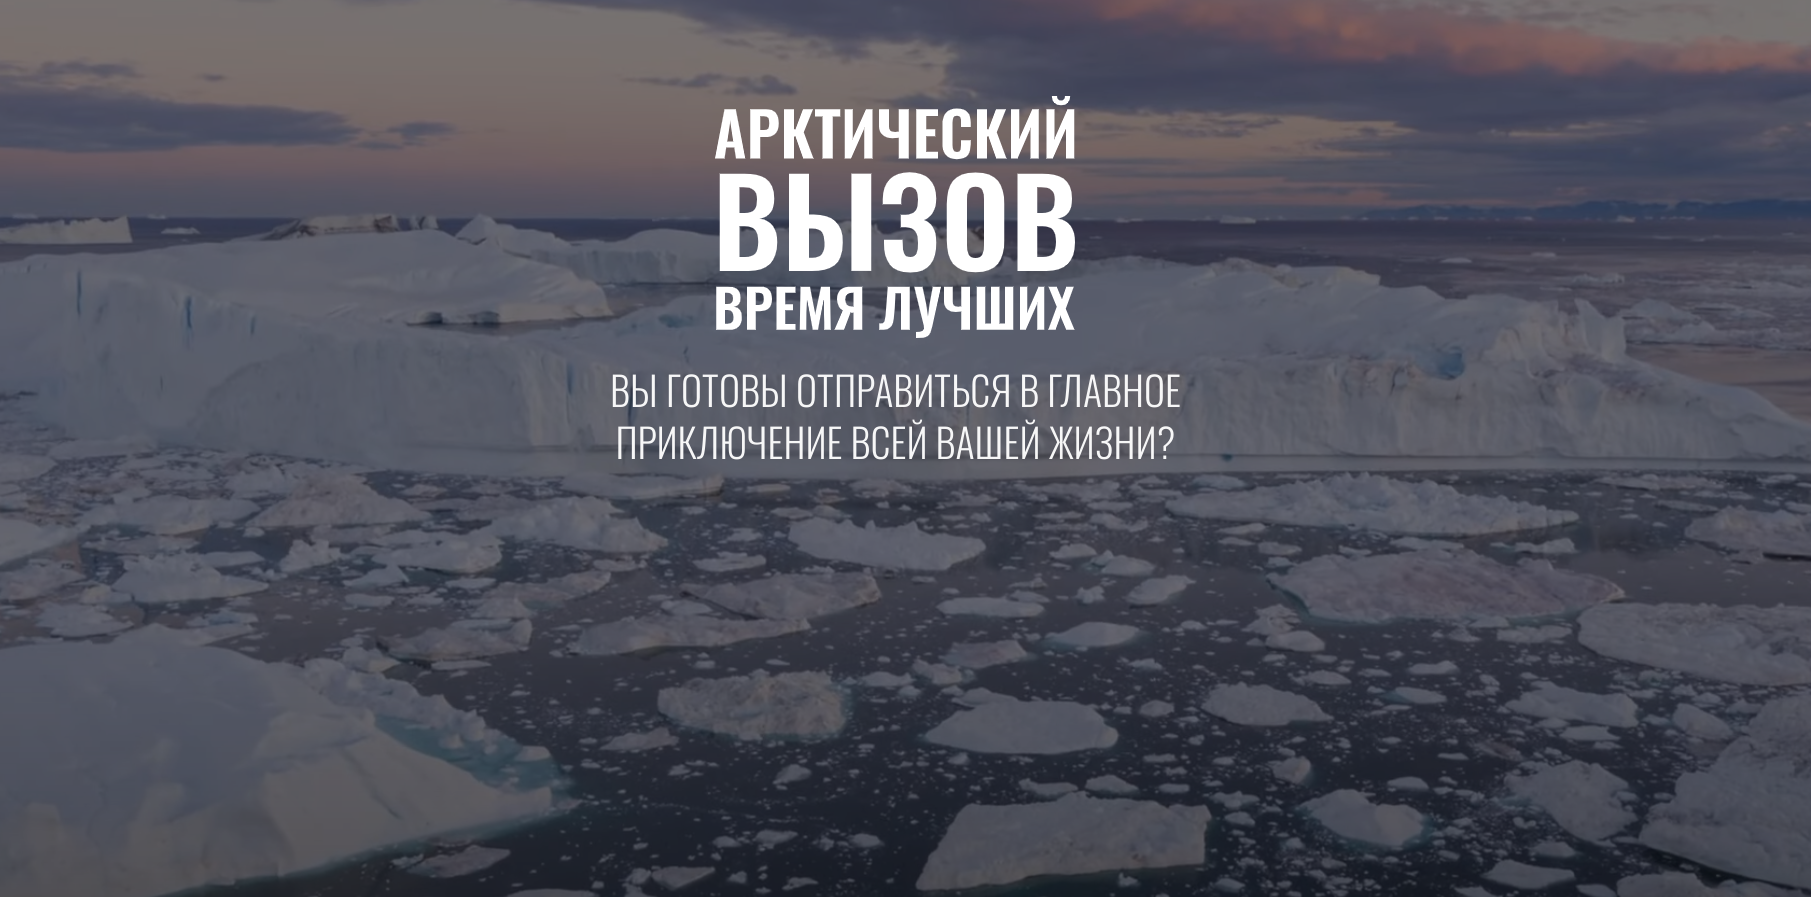 Жителям Ярославской области предлагают принять участие в реализации проекта «Арктический вызов»